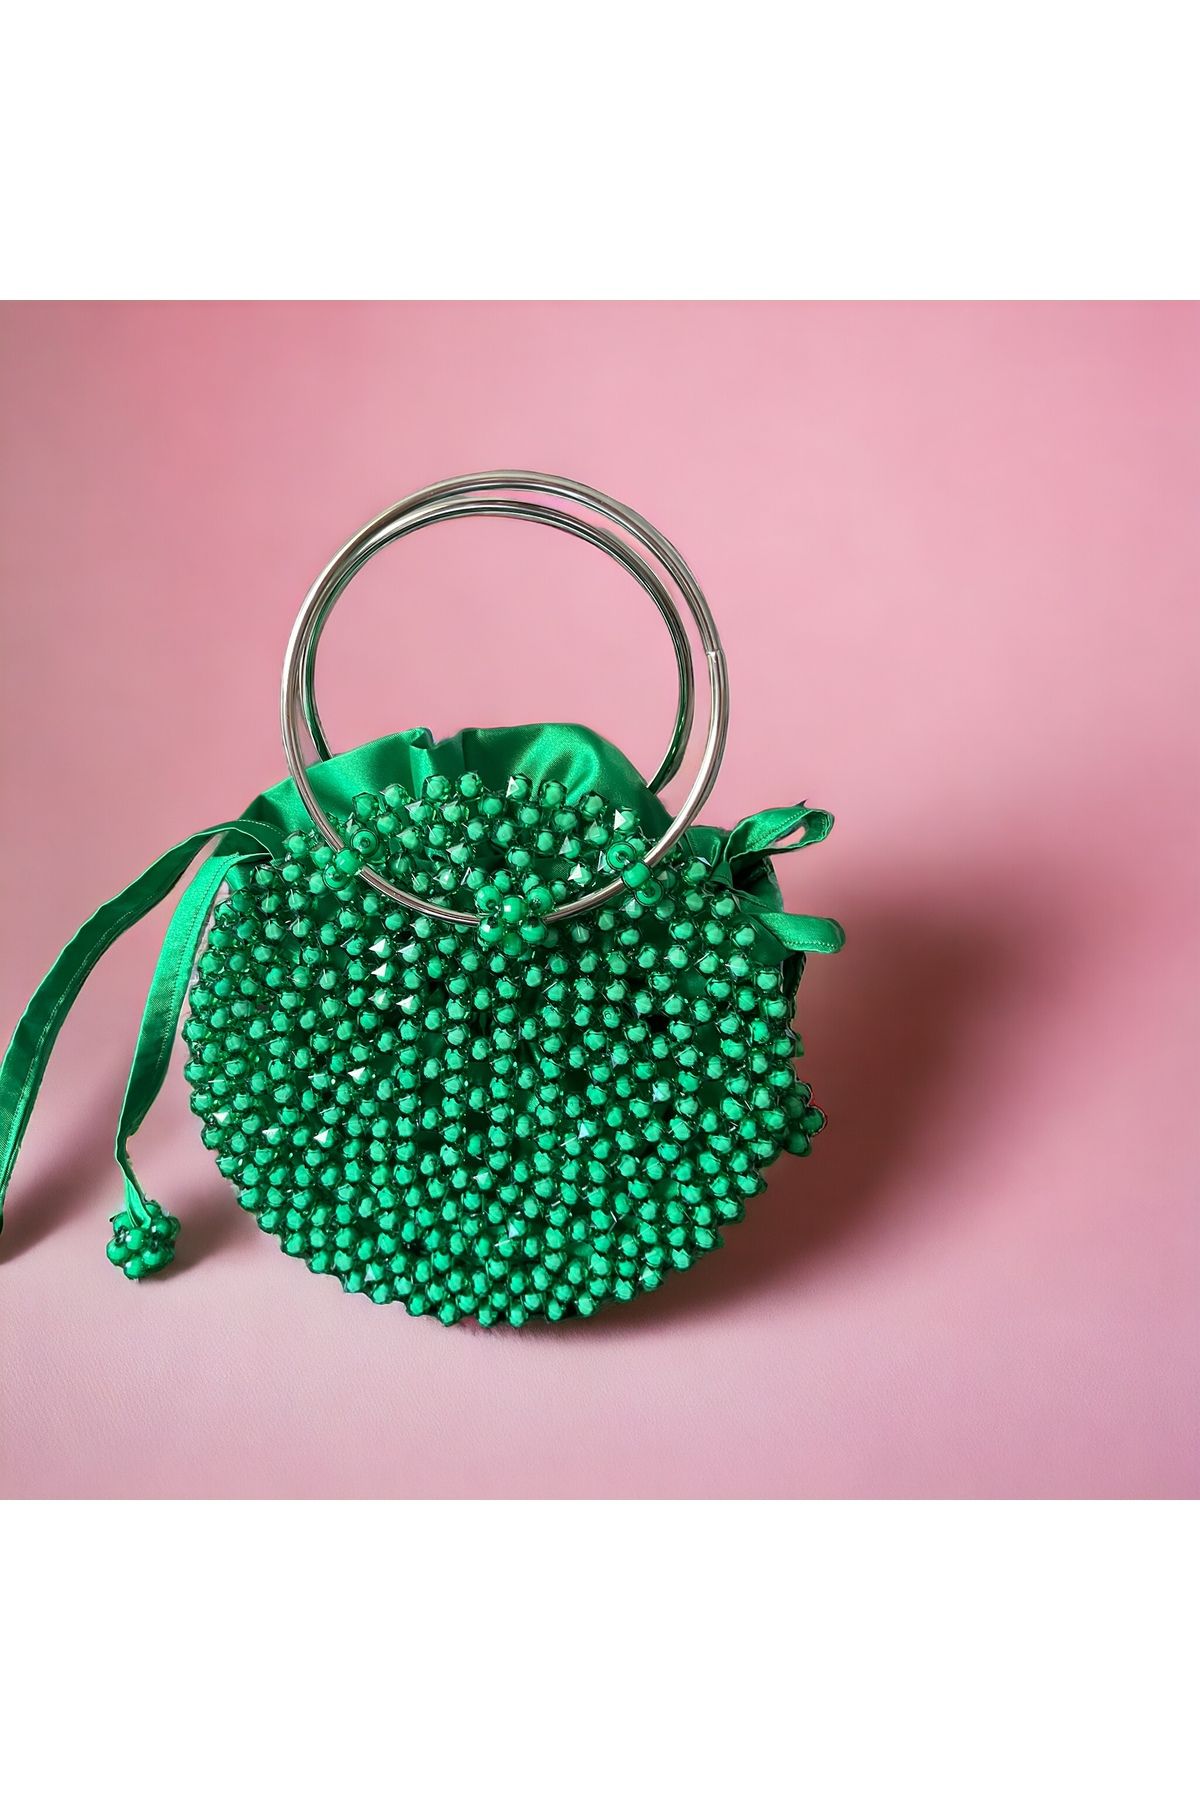 İLAYKO TASARIM Handmade abiye el çantası